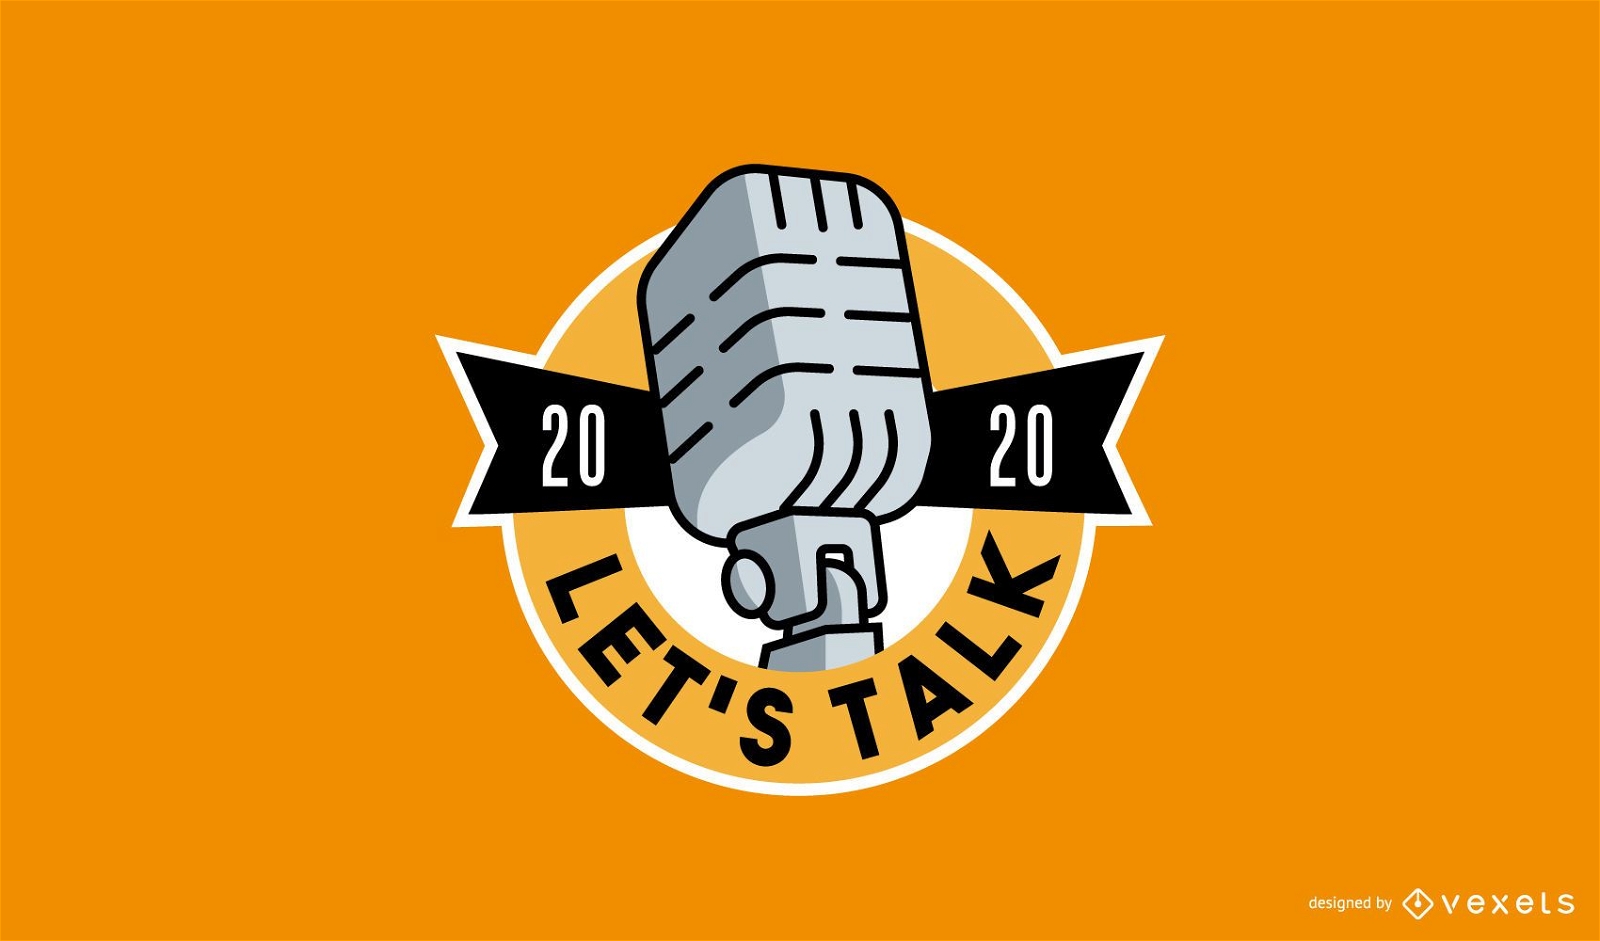 podcast logo design